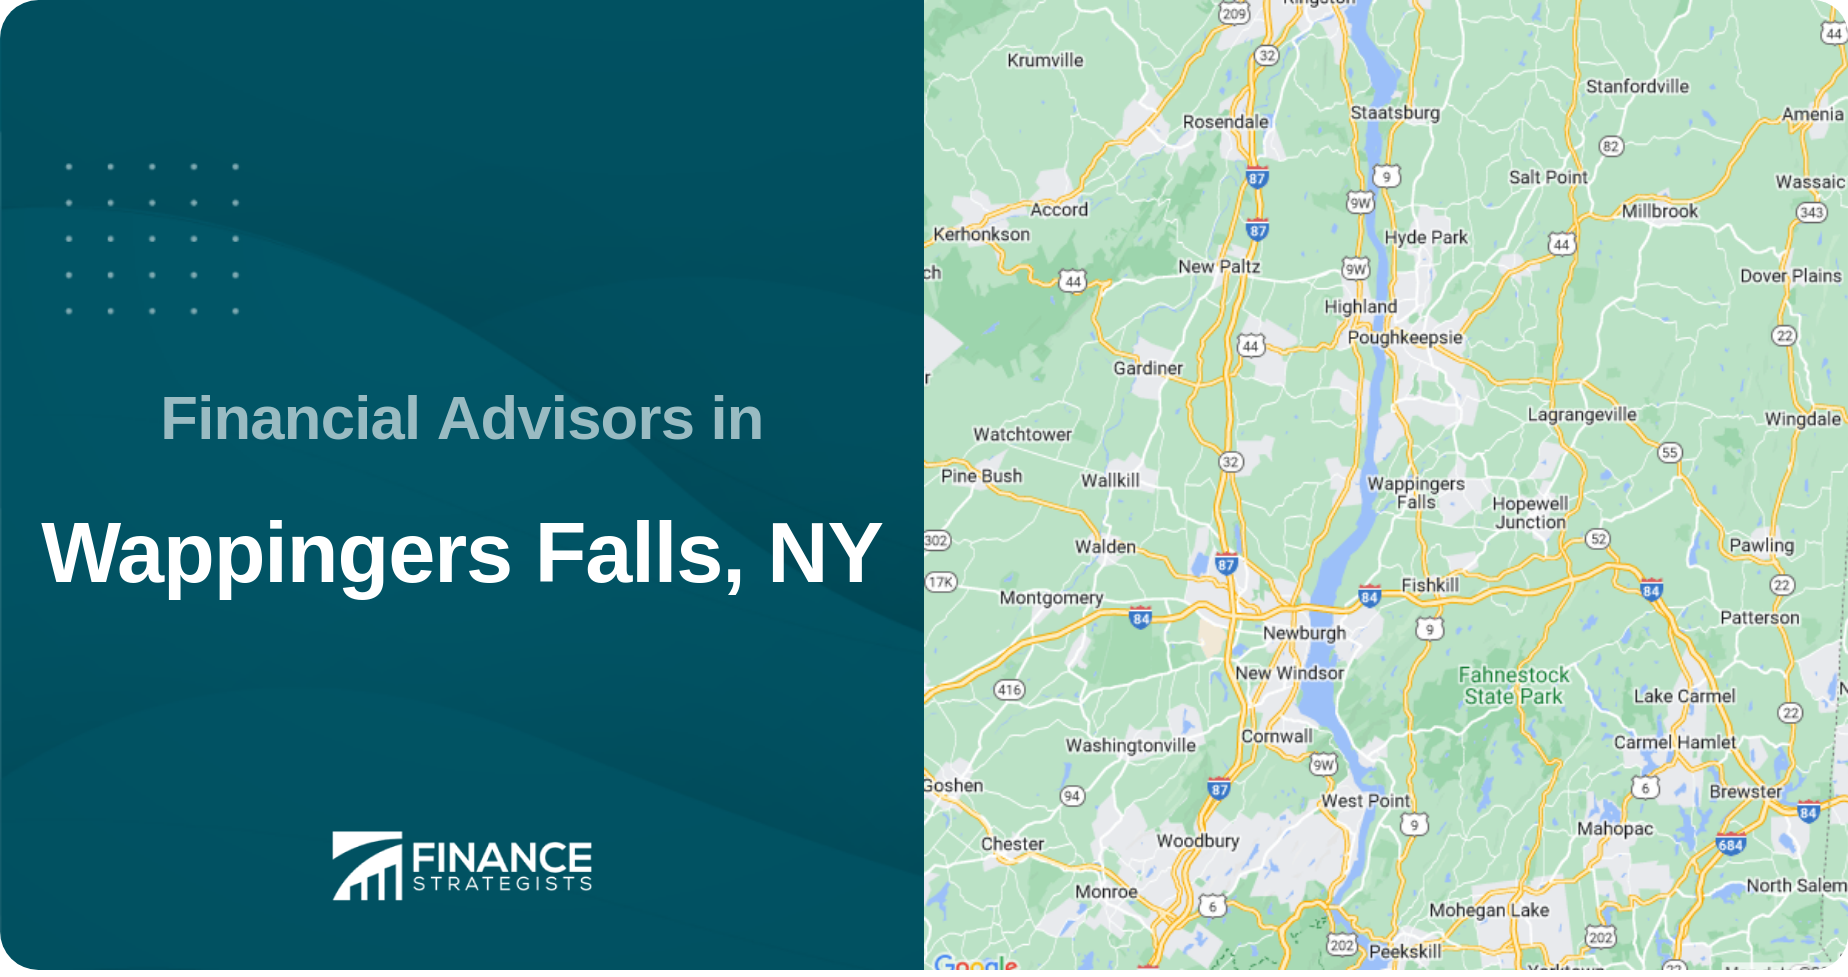 Financial Advisors in Wappingers Falls, NY